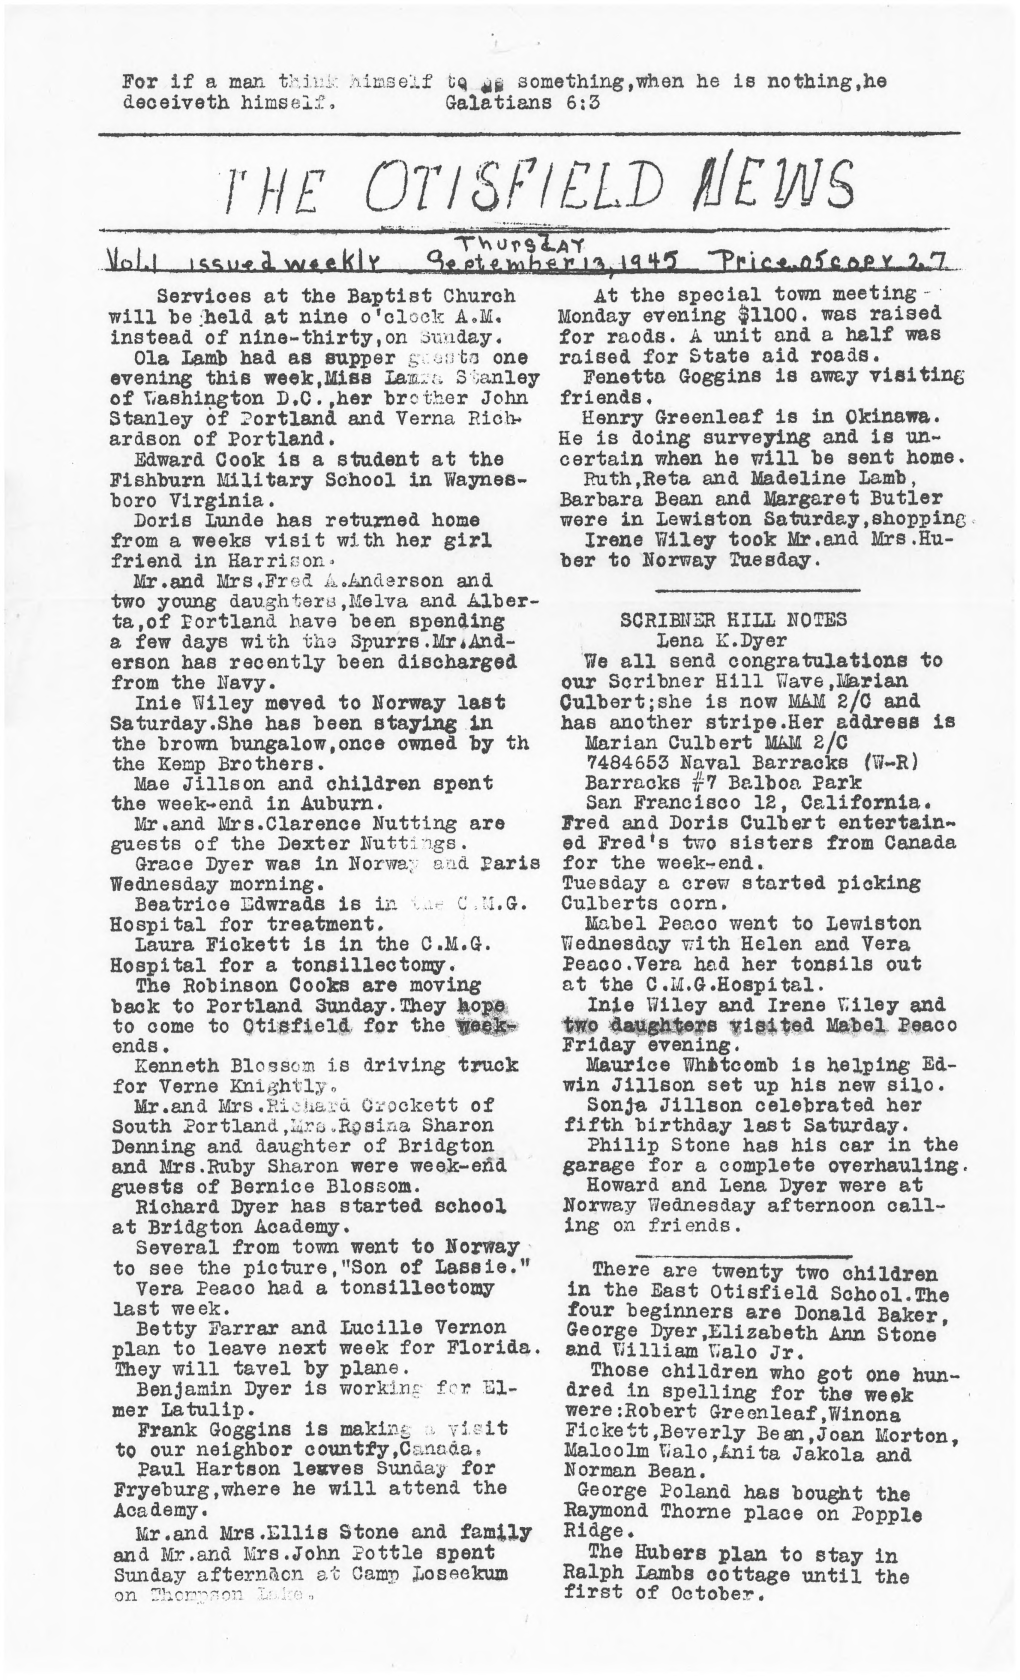 The Otisfield News: September 13, 1945